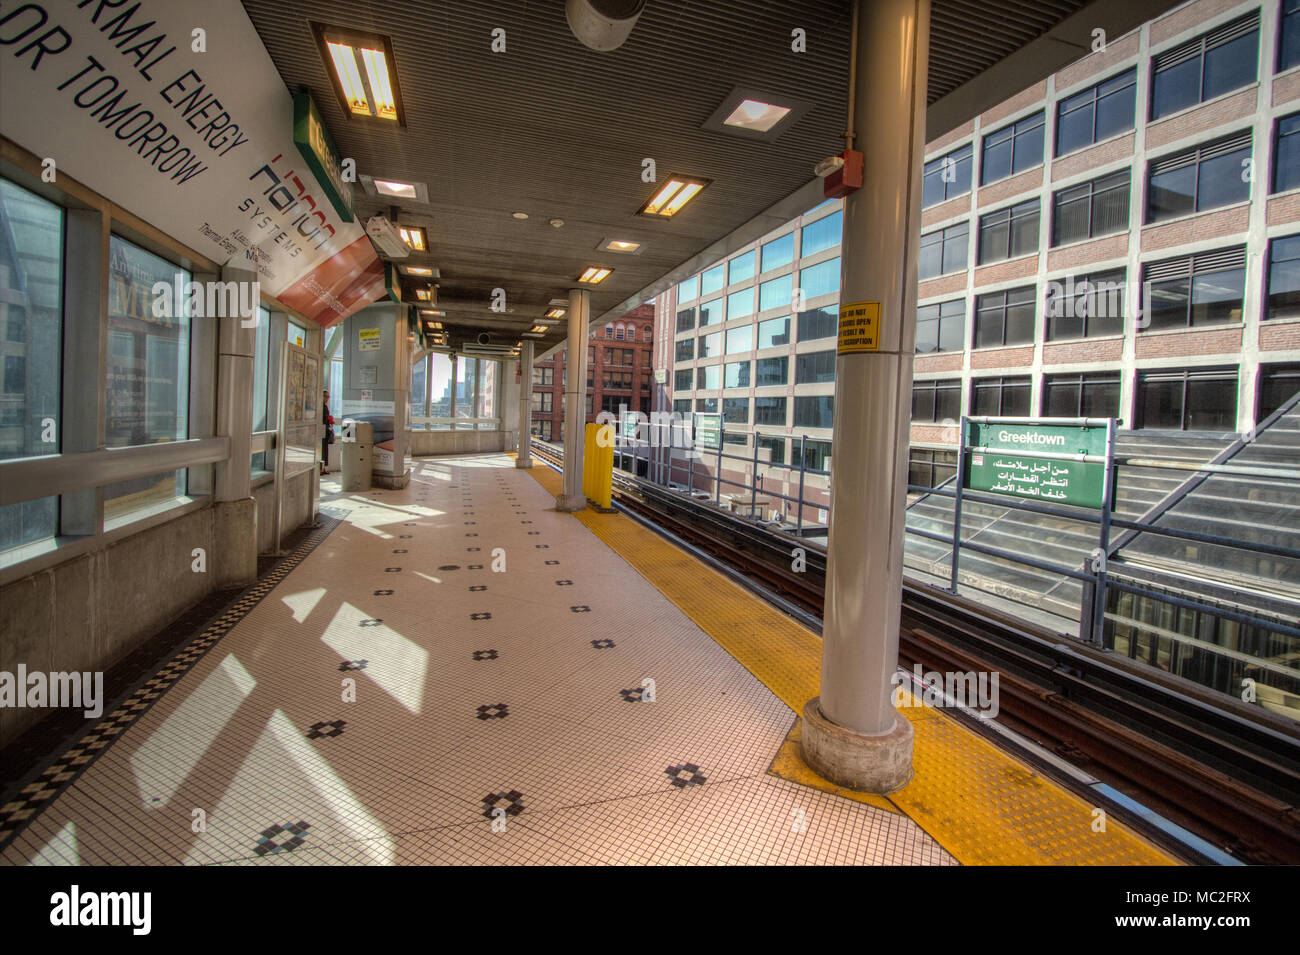 Einrichtung eines leeren People Mover monorail Transportation System an der Greektown Station in der Innenstadt von Detroit, Michigan, USA. Stockfoto